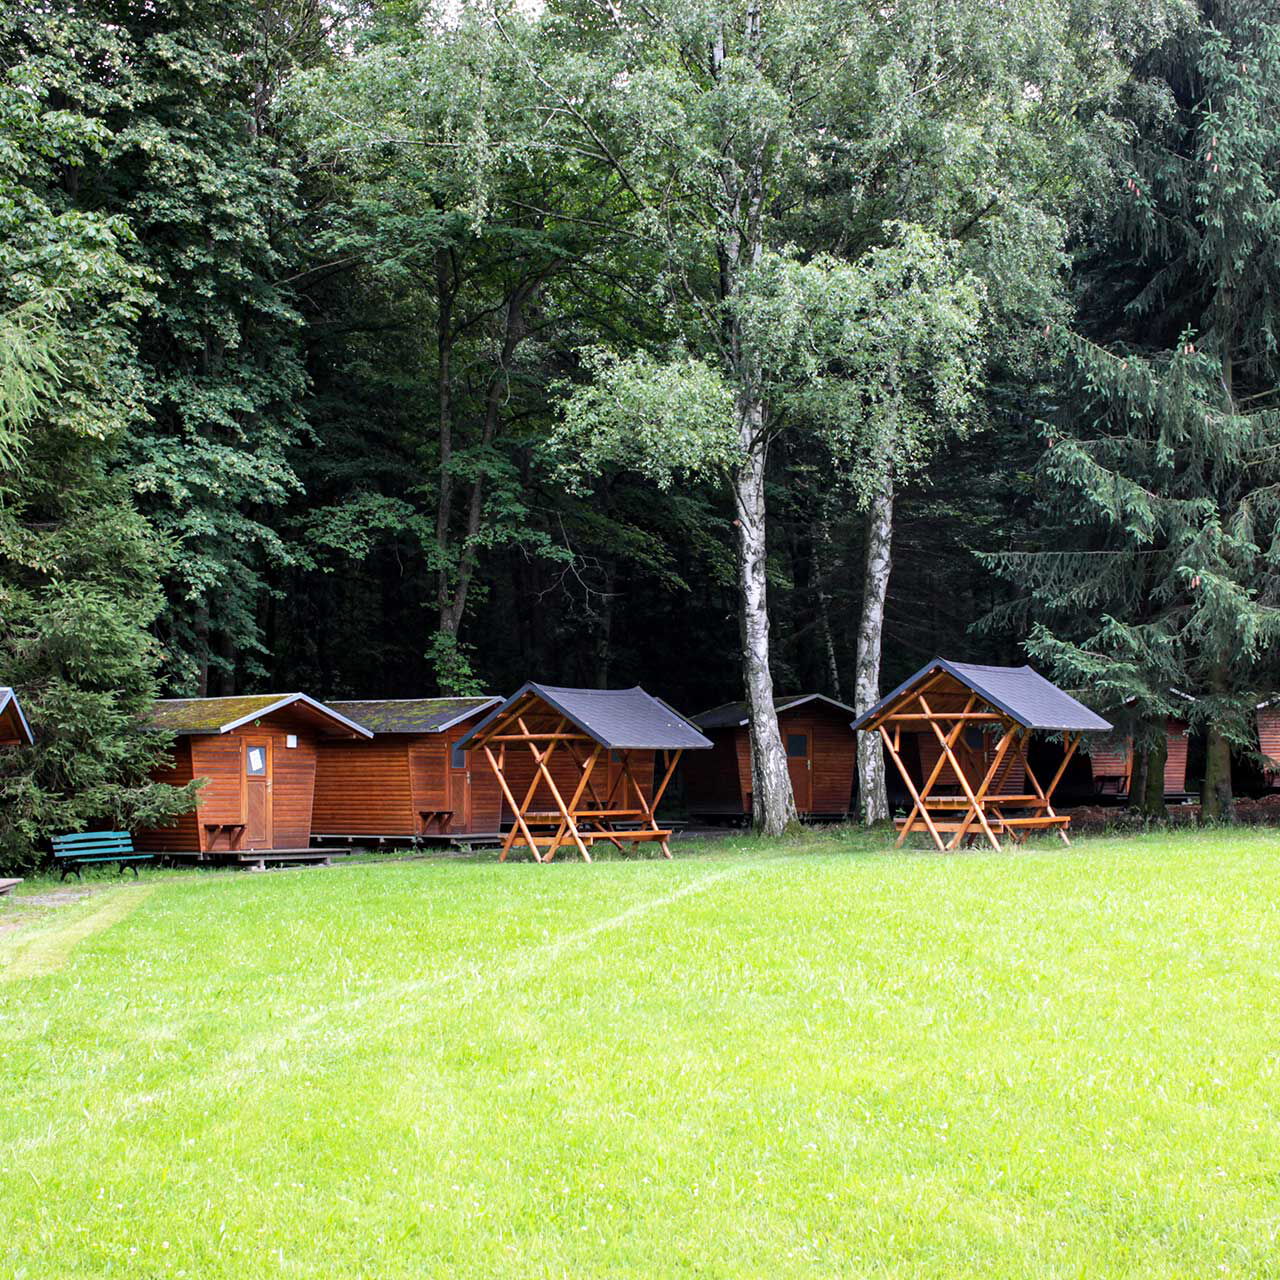 Zehn Abenteuer-Holzhäuschen am Waldrand, eine große Wiese und zwei überdachte Sitzgruppen.